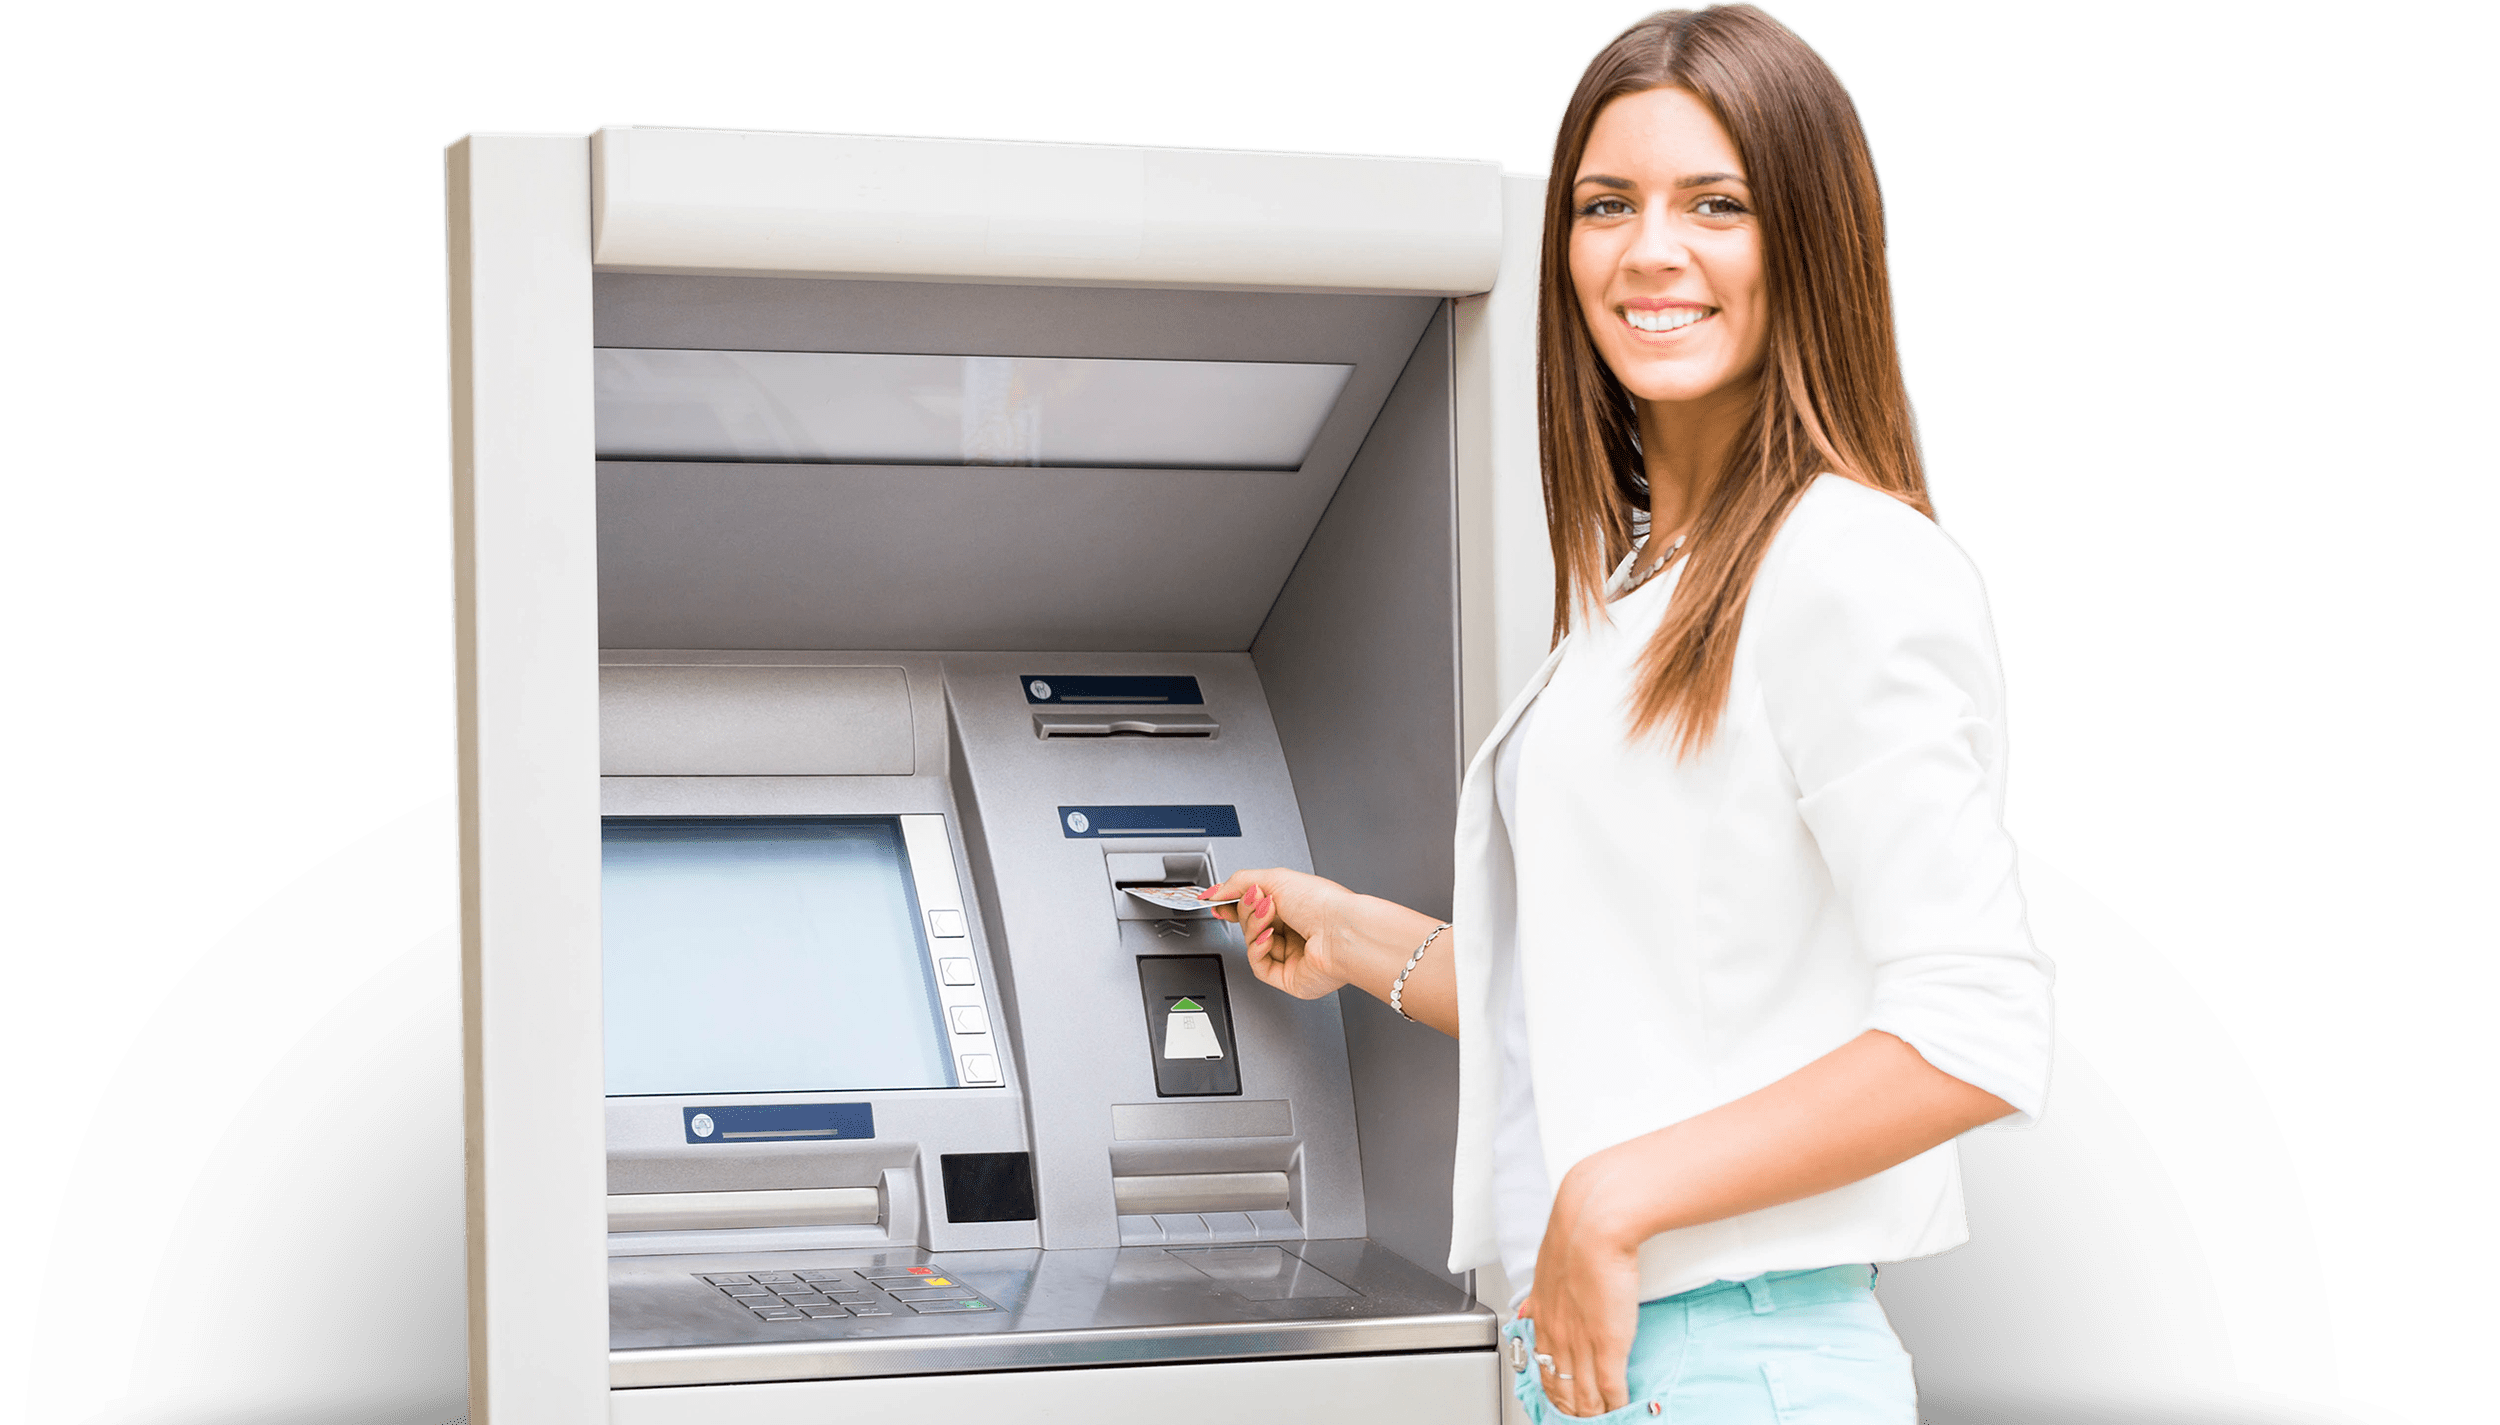 ATM happy customer no explosion